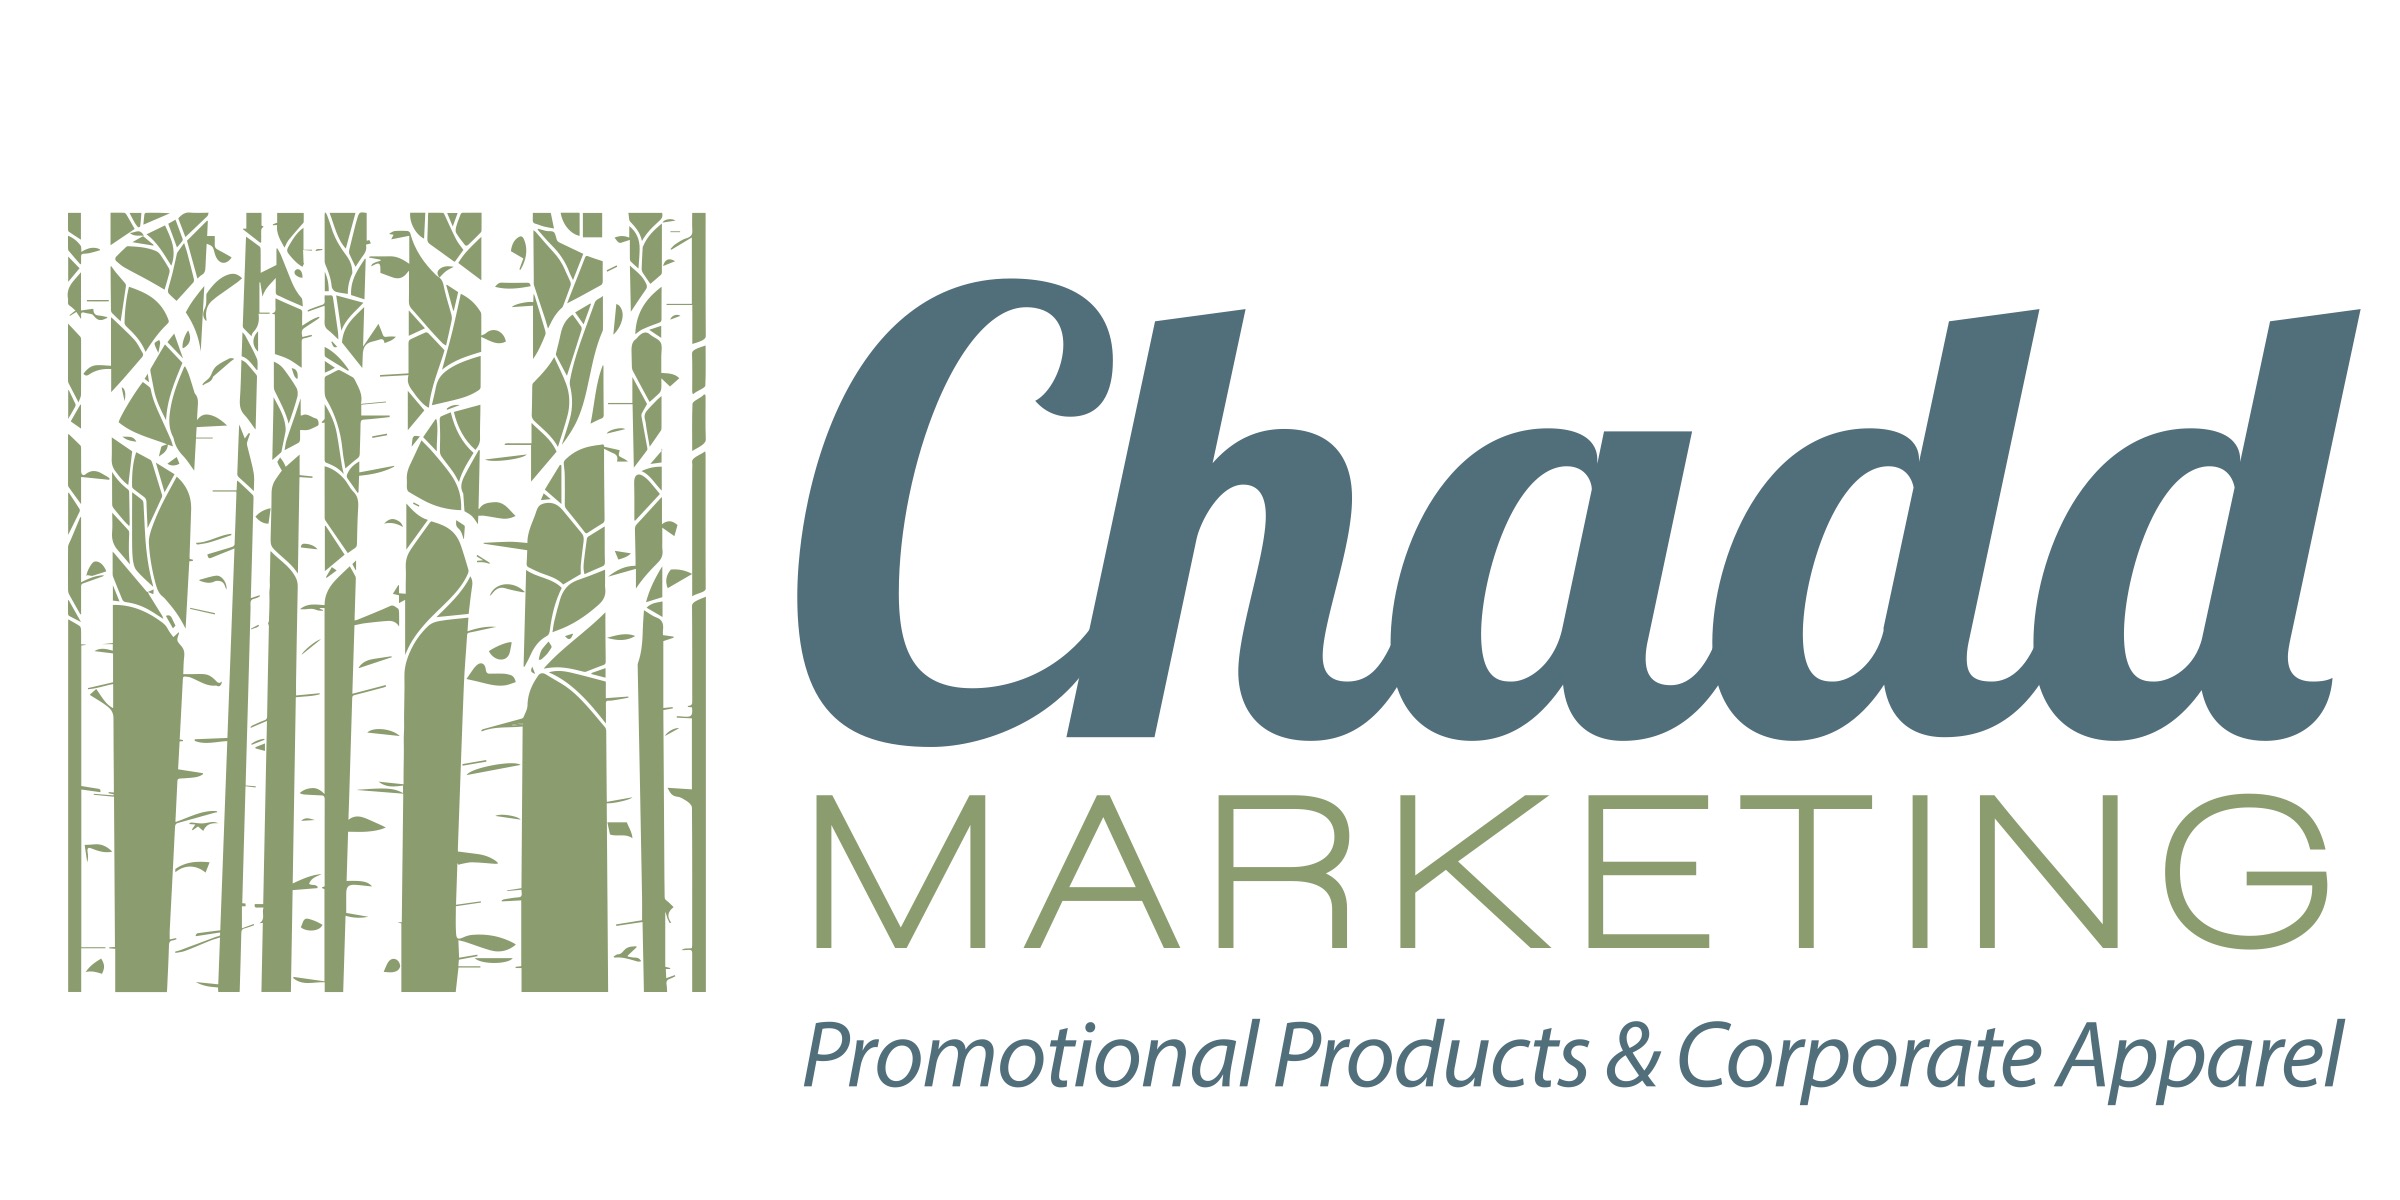 Chadd Marketing Inc's Logo